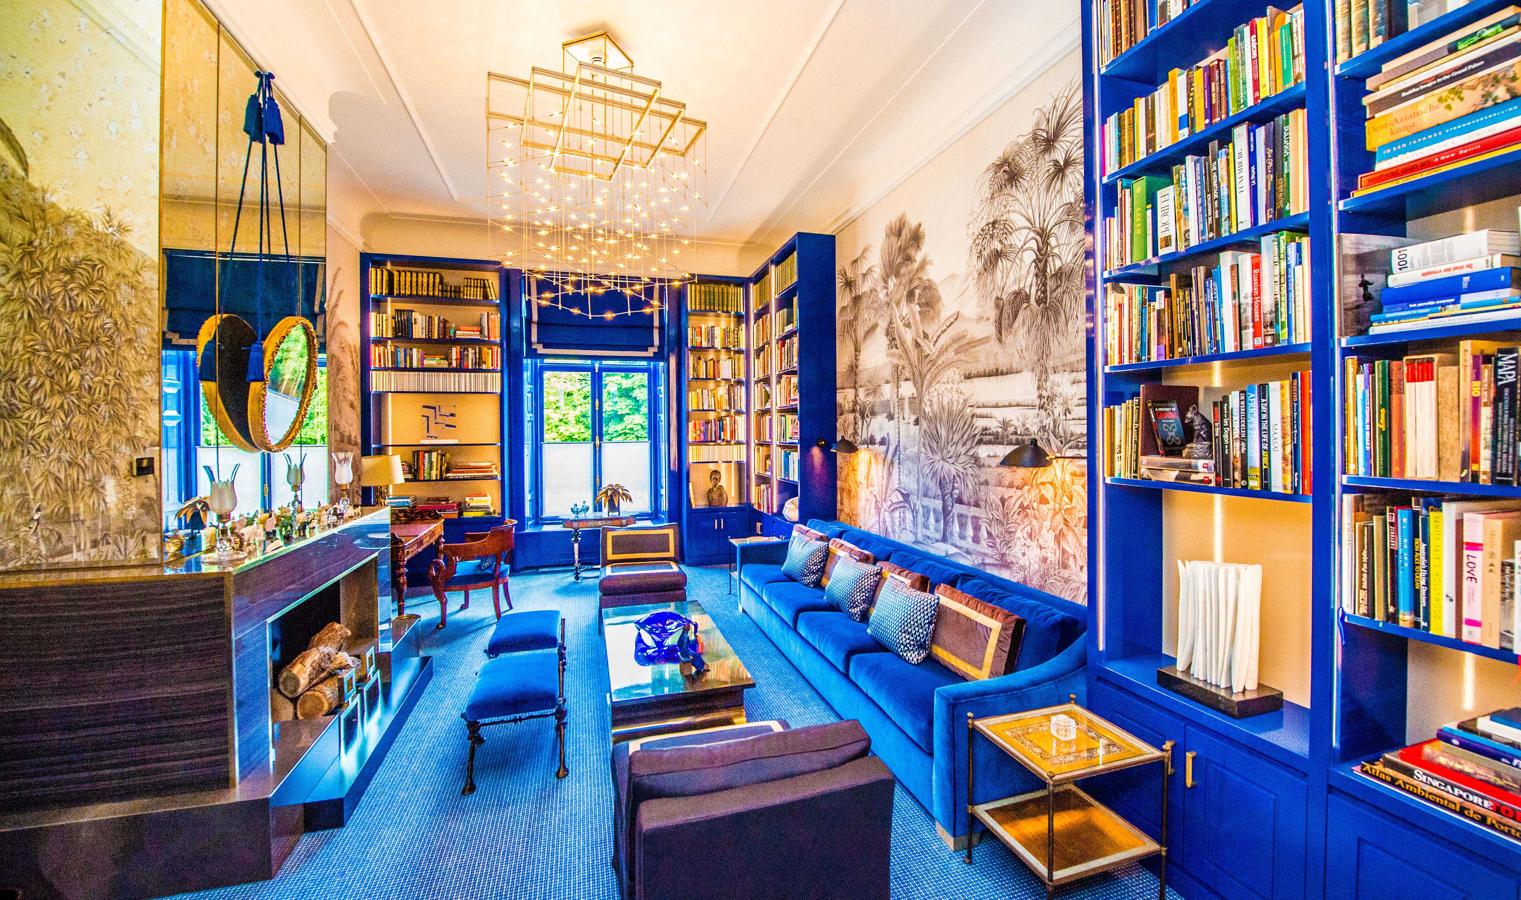 Huis ten Bosch, la residencia de Máxima y Guillermo de Holanda. Pegado a la sala está la librería que hace las veces de salón, un rincón muy acogedor que comparte elementos decorativos con el despacho, especialmente en la paleta de color.